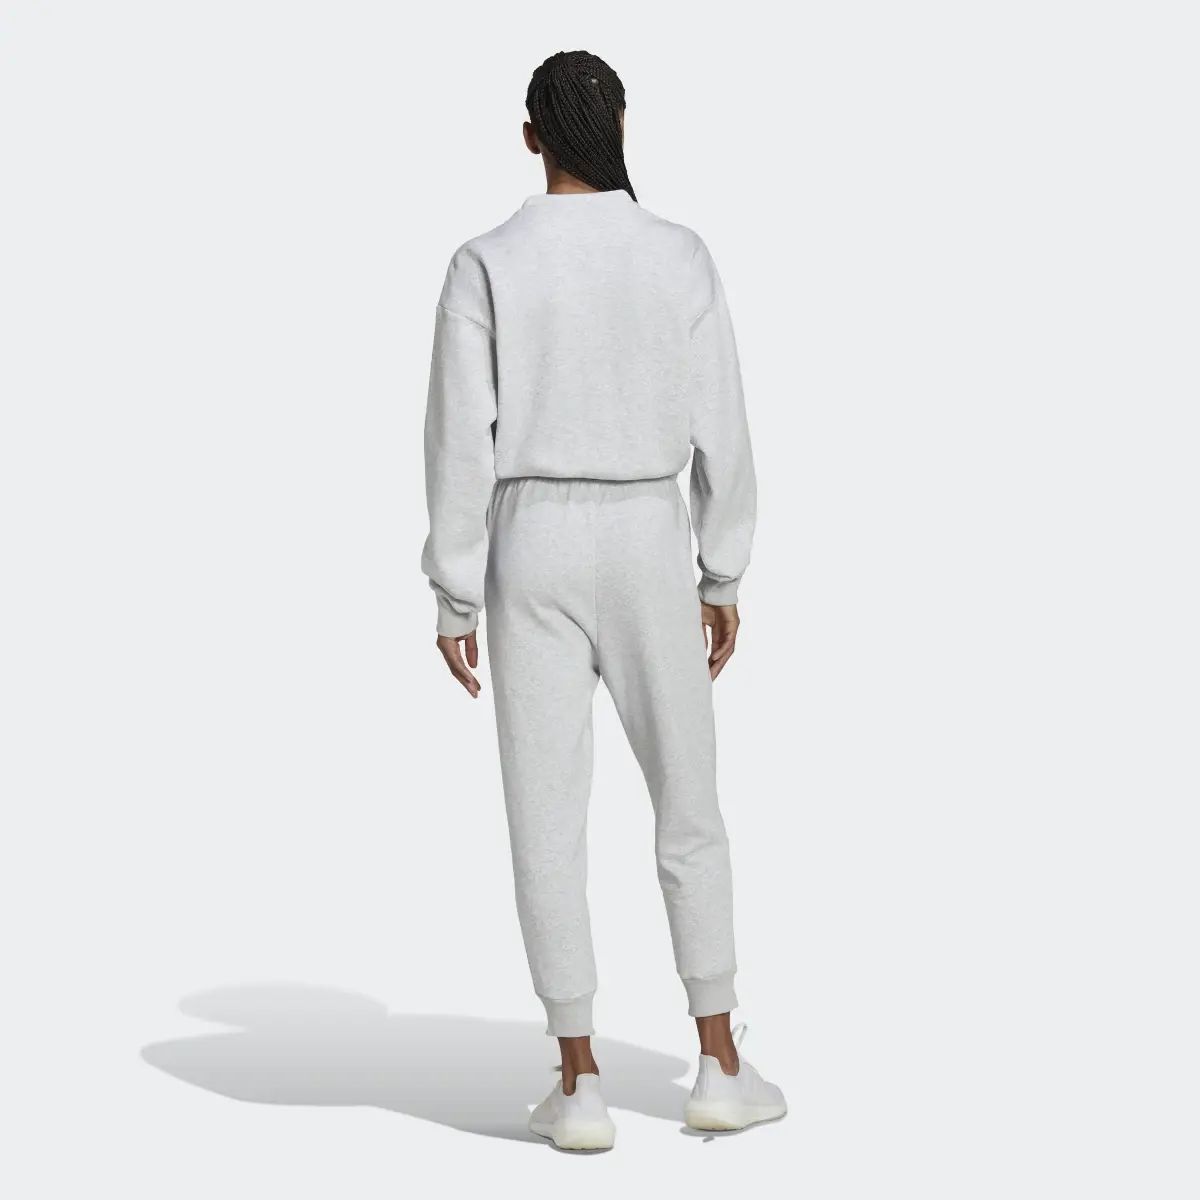 Adidas Studio Lounge 7/8 Length Fleece Bodysuit. 3